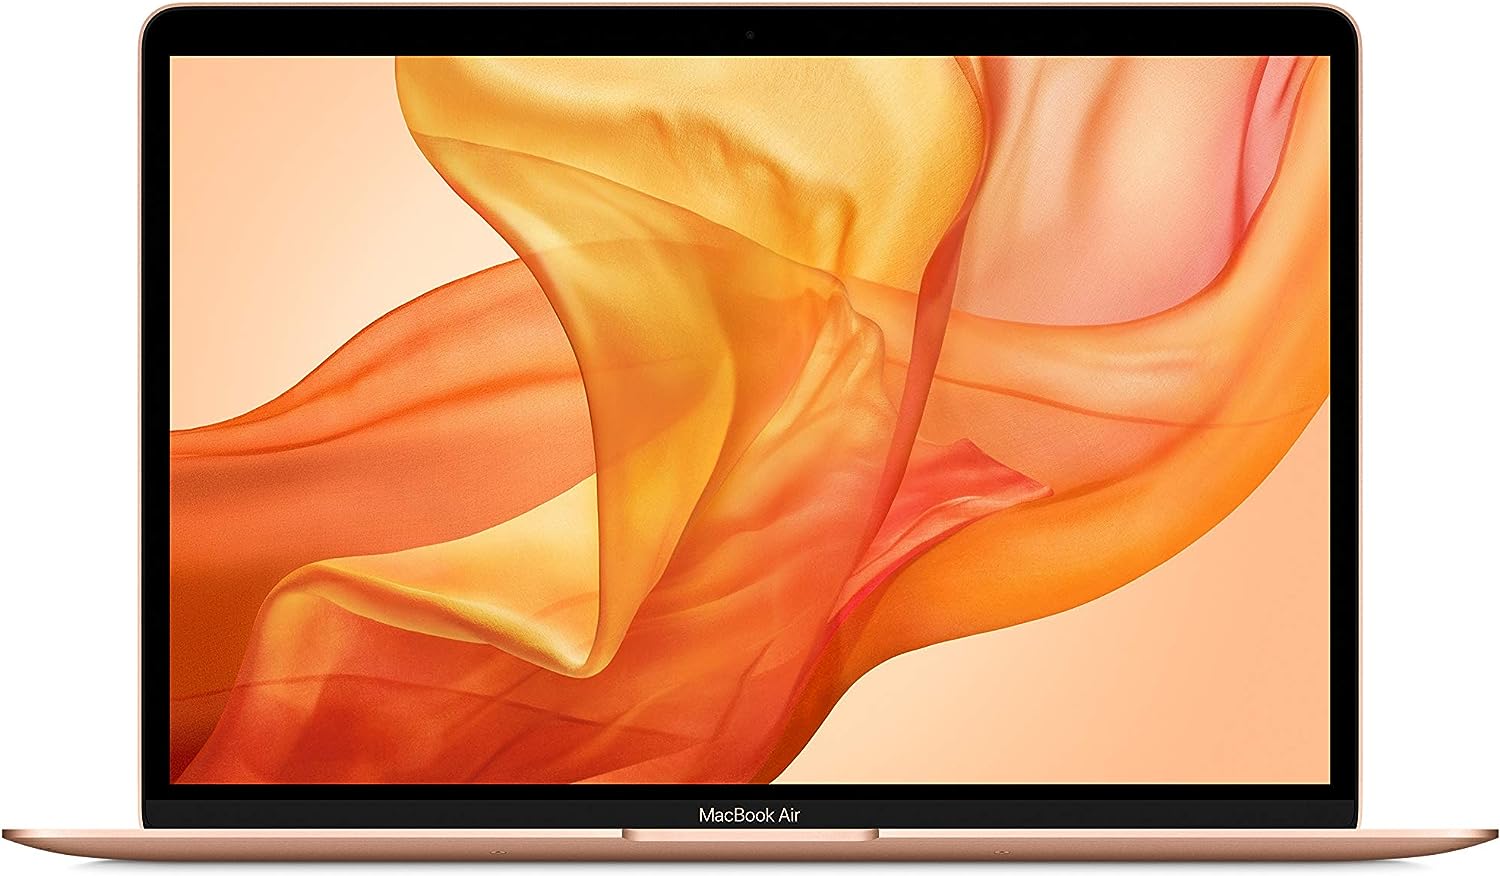 635460fd4f53ac544a4b7465 apple macbook air 13 inch retina